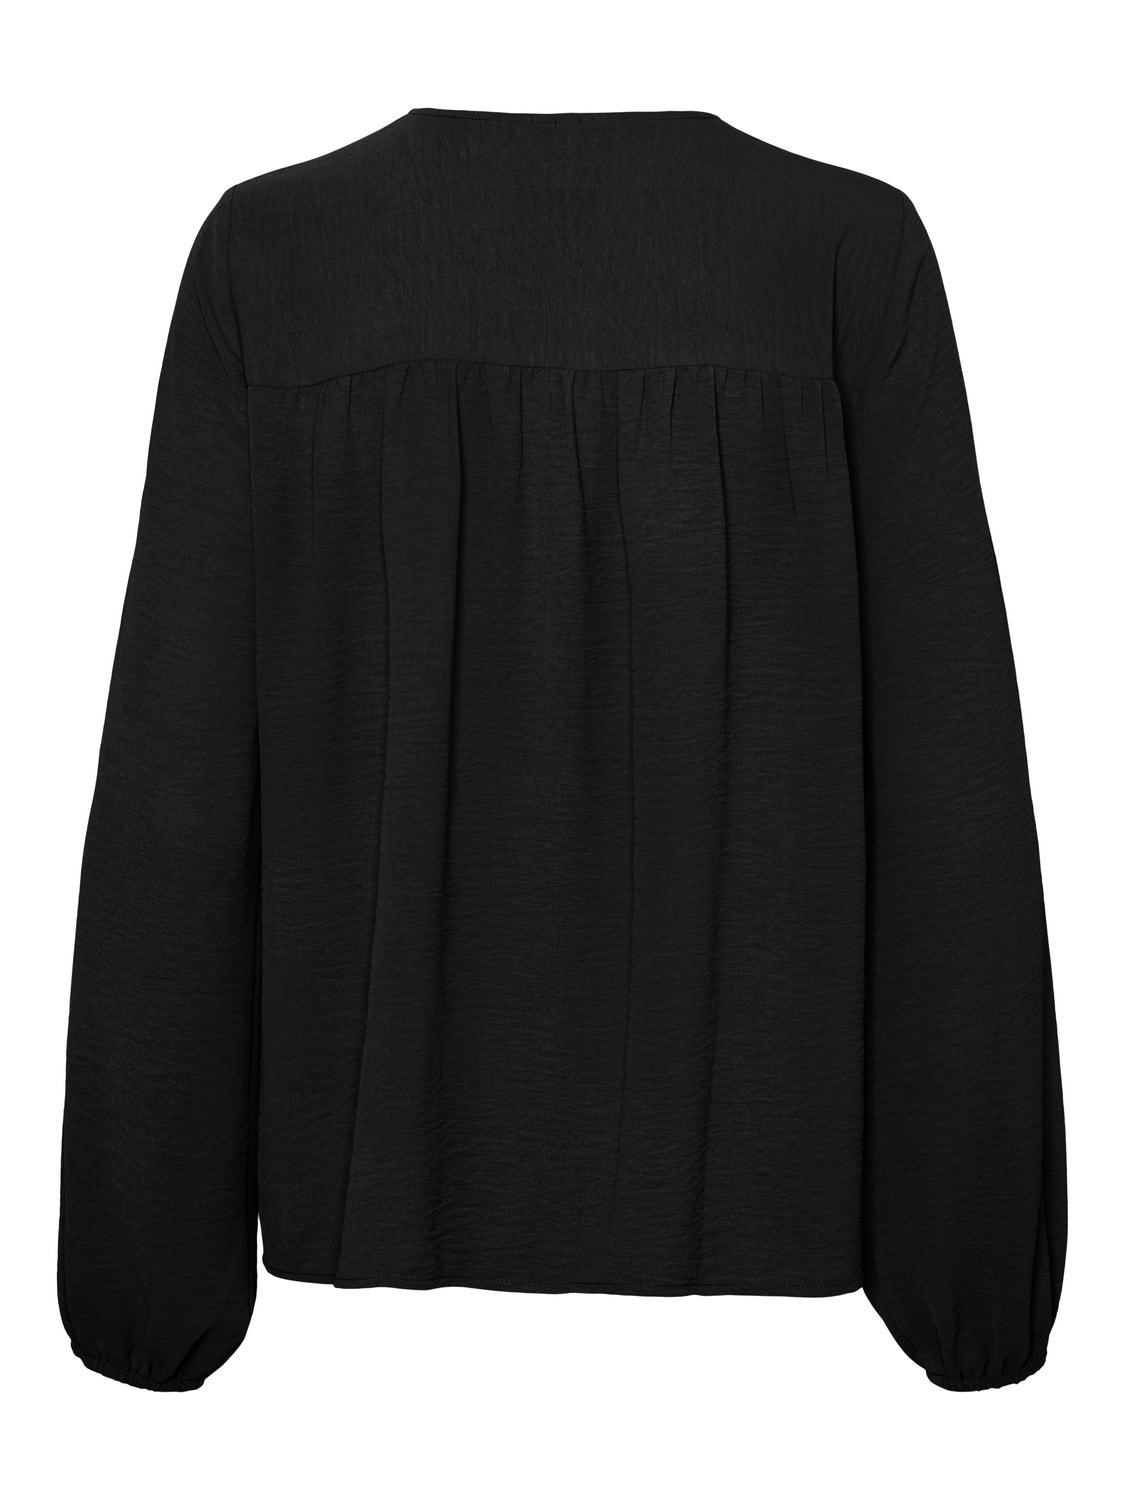 Vero Moda VMALVA Shirt -Black - 10301135